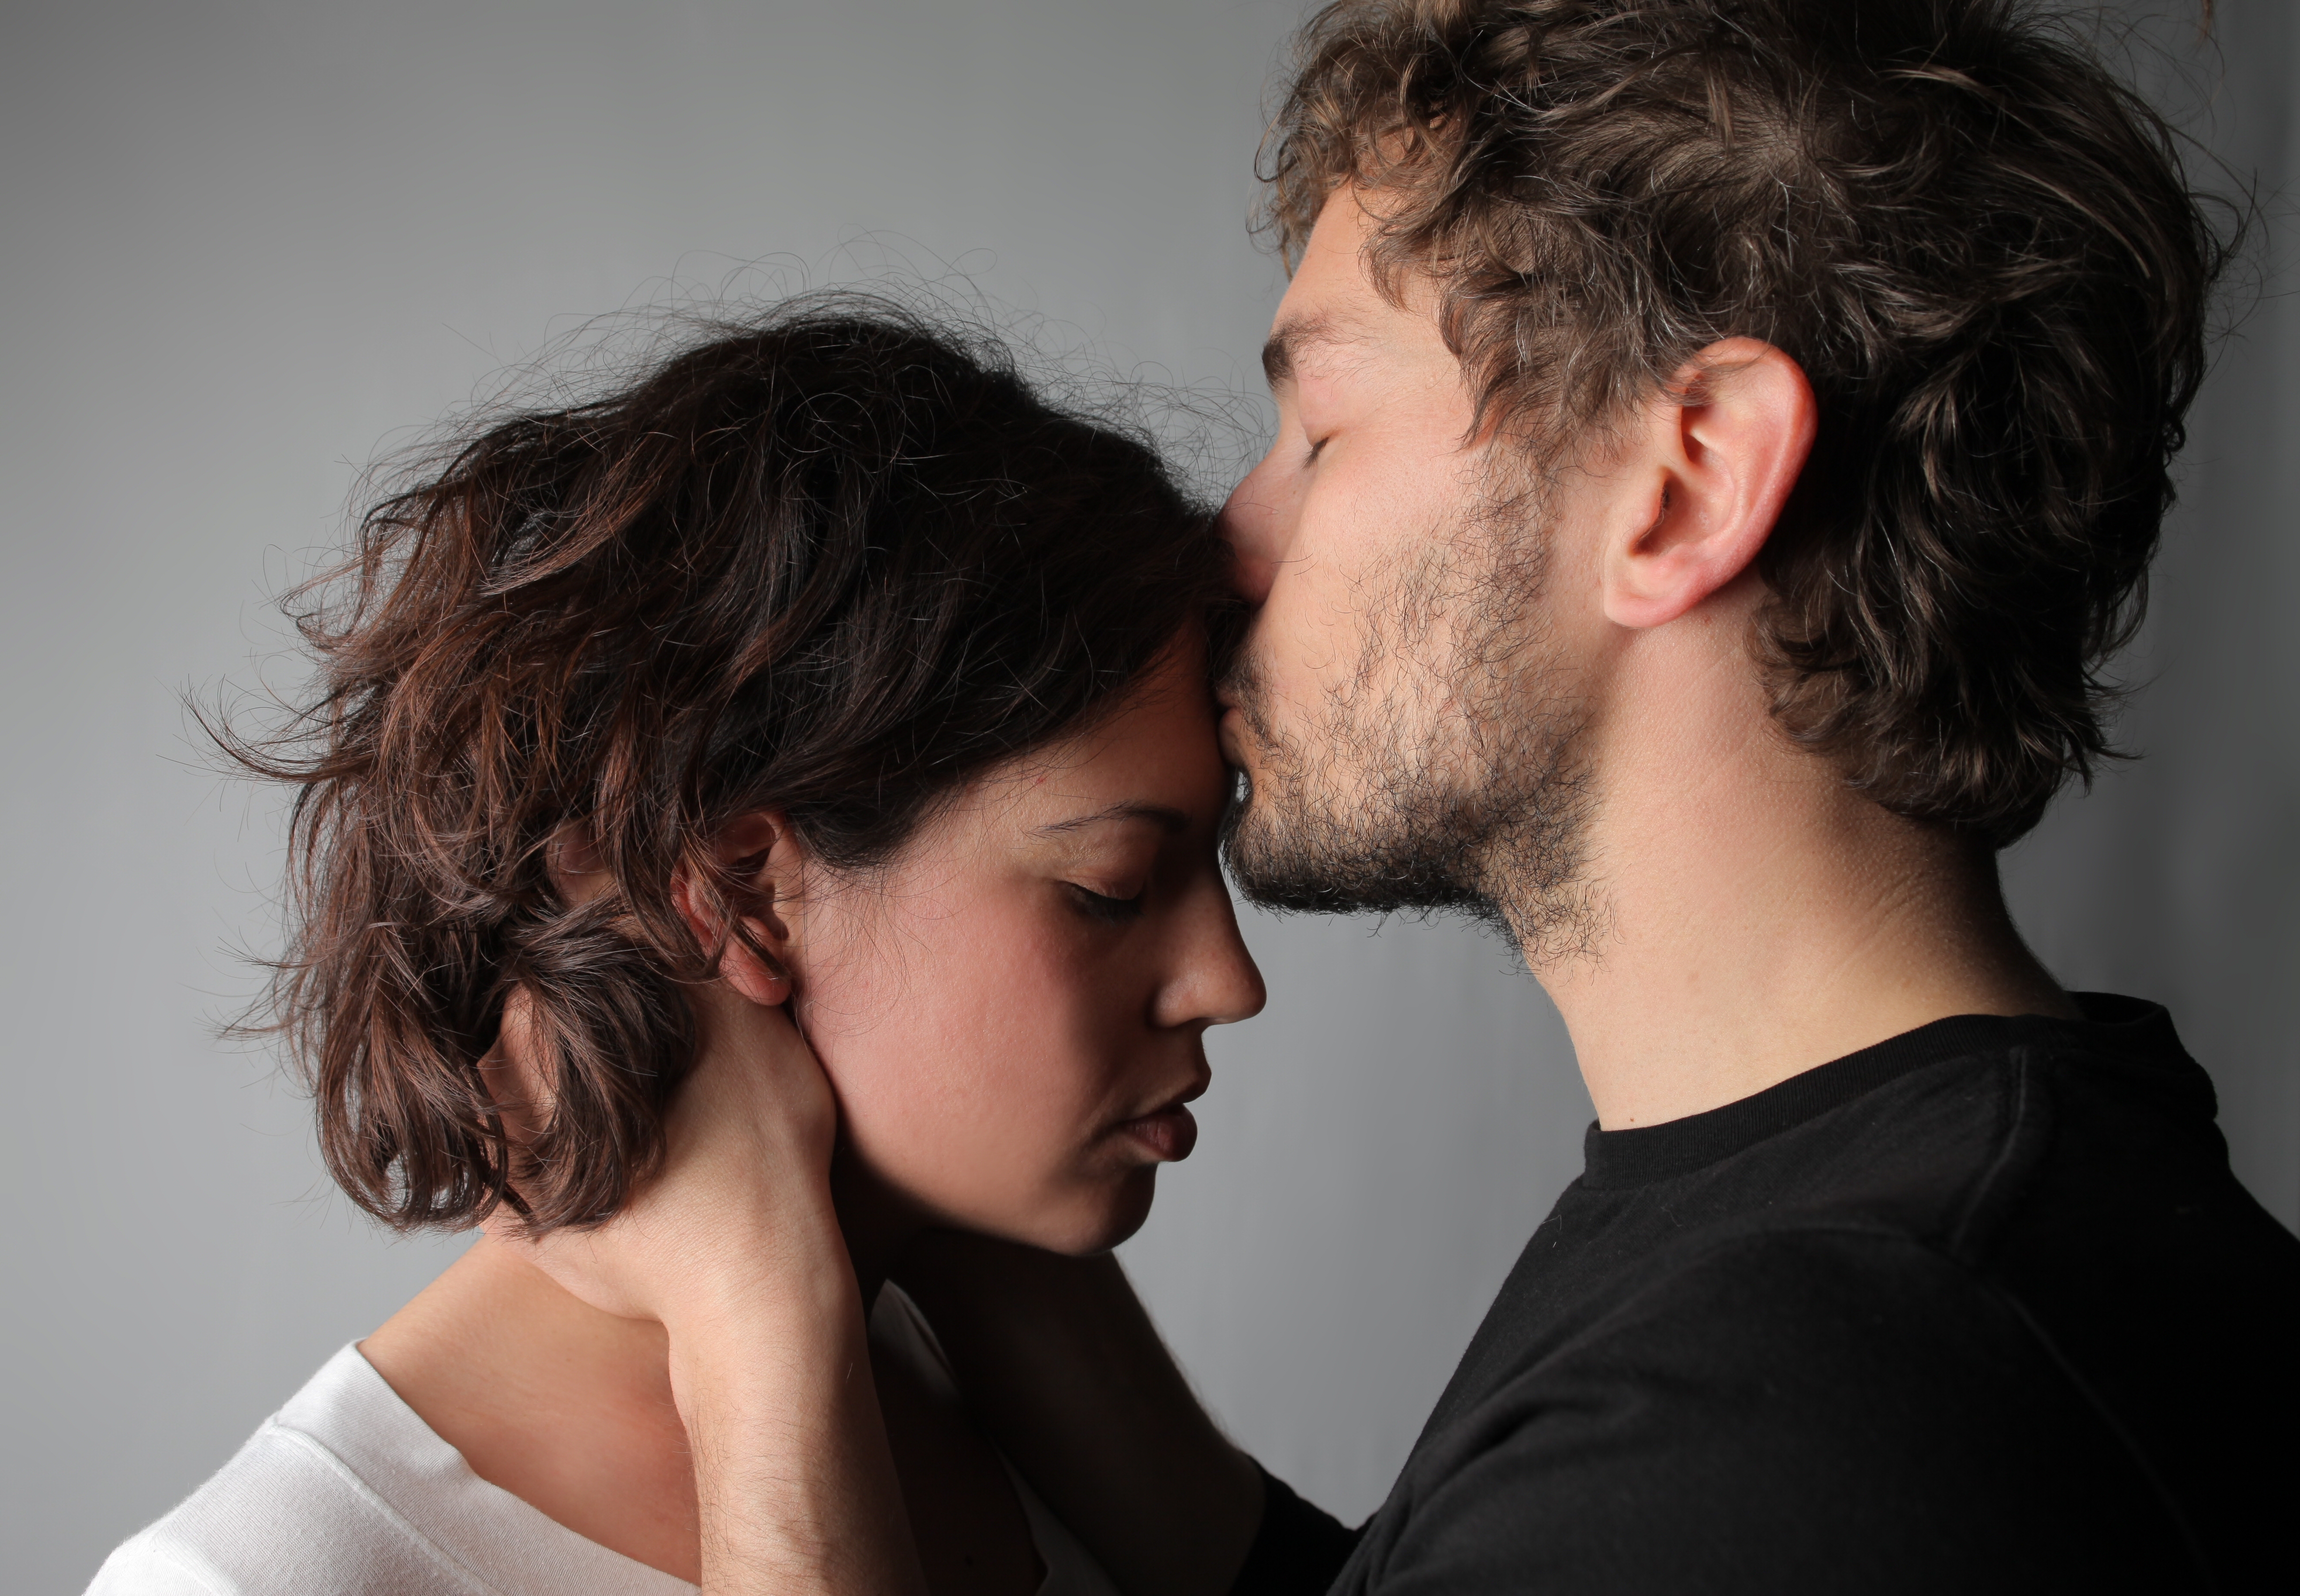 Un novio consuela a una joven | Fuente: Shutterstock